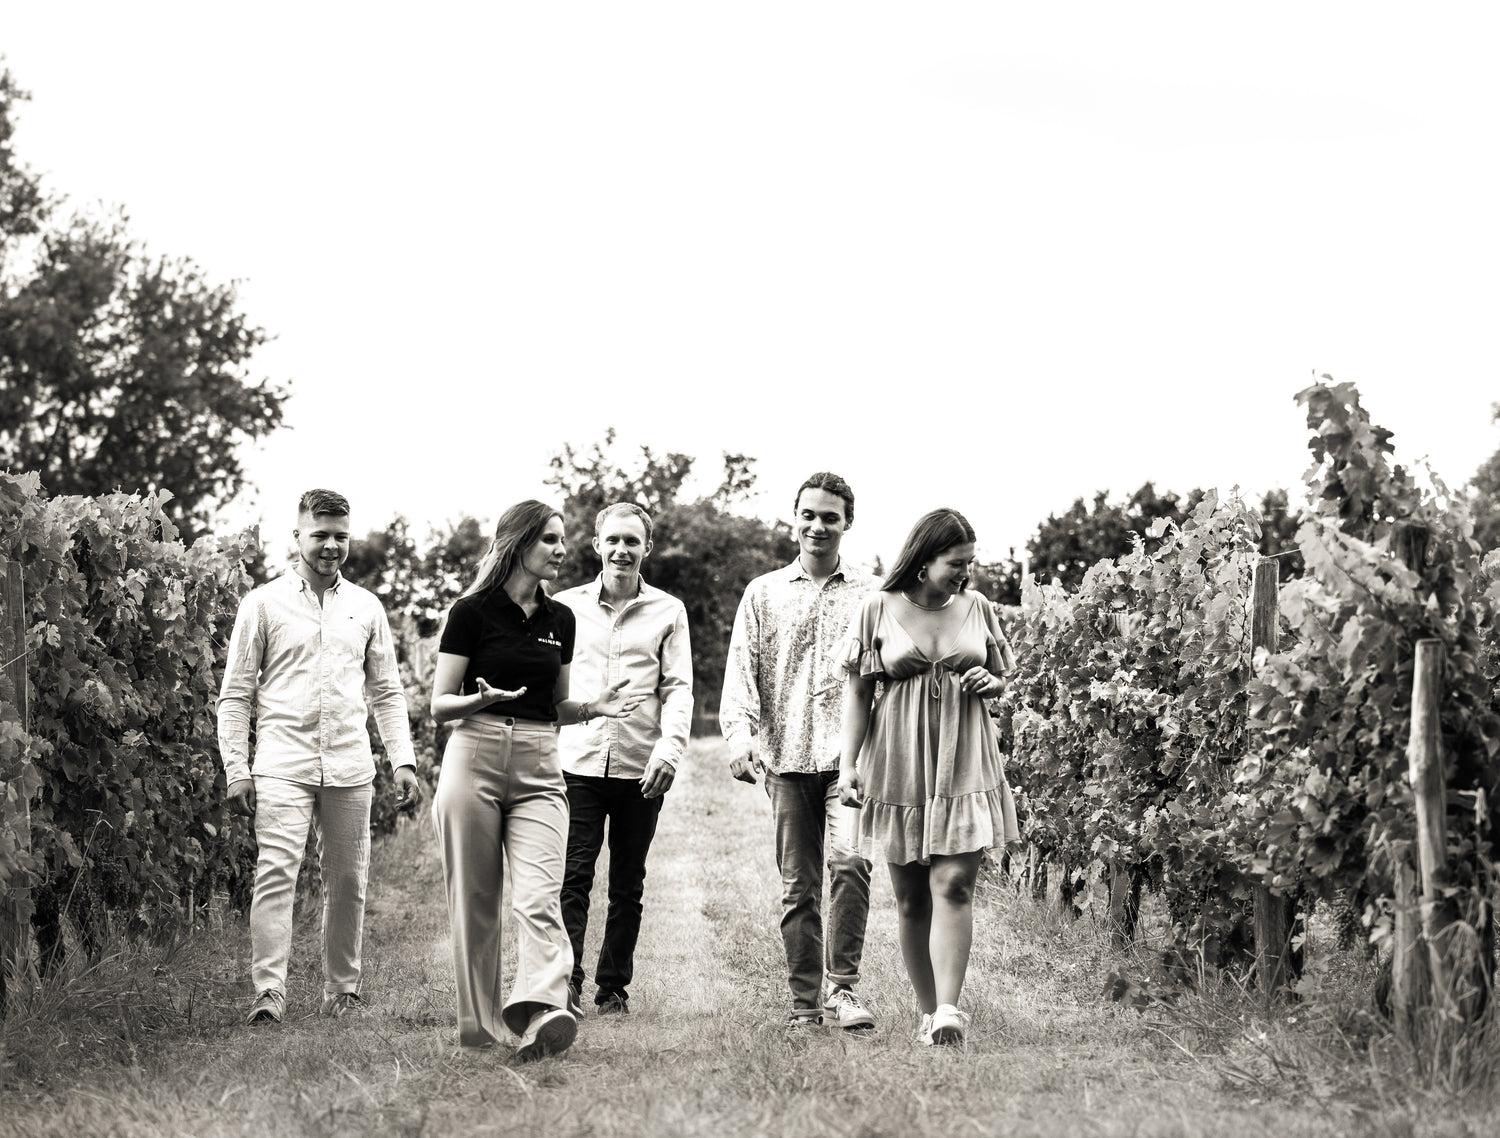 A groupe of visitors in the vineyard during a wine tour / une groupe de visiteur pendant une visite dans le vignes